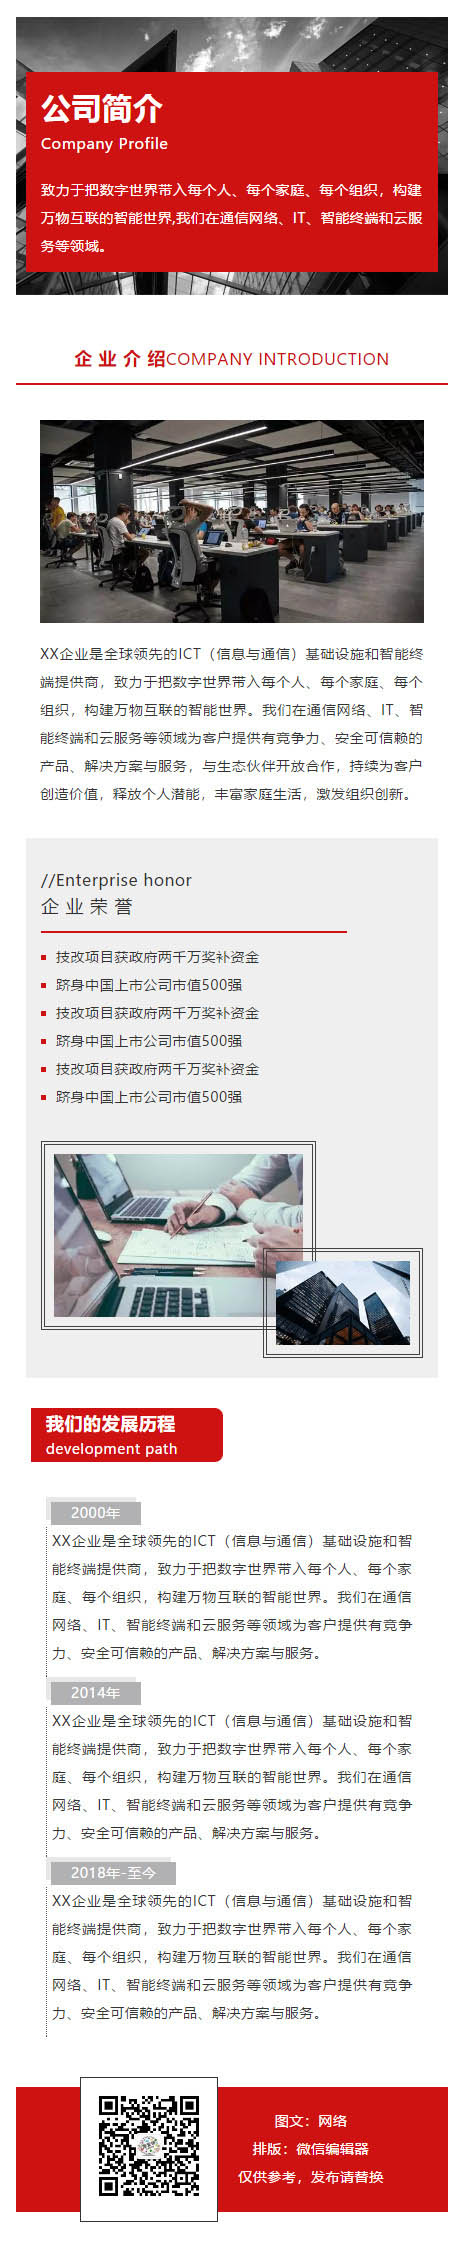 企业荣誉公司介绍红色风格微信图文模板推文素材